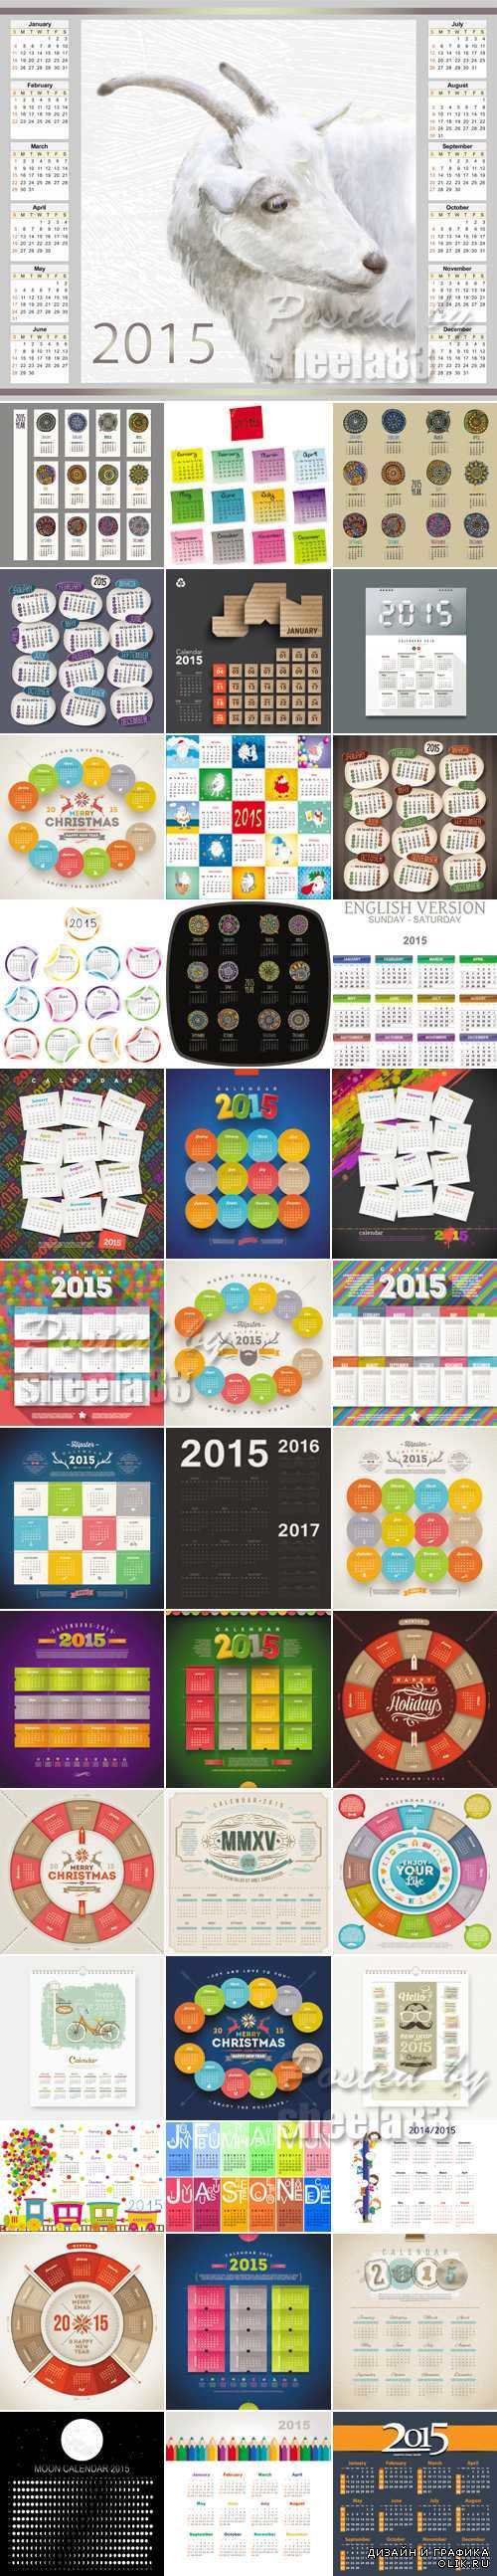 Calendar 2015 Vector Collection